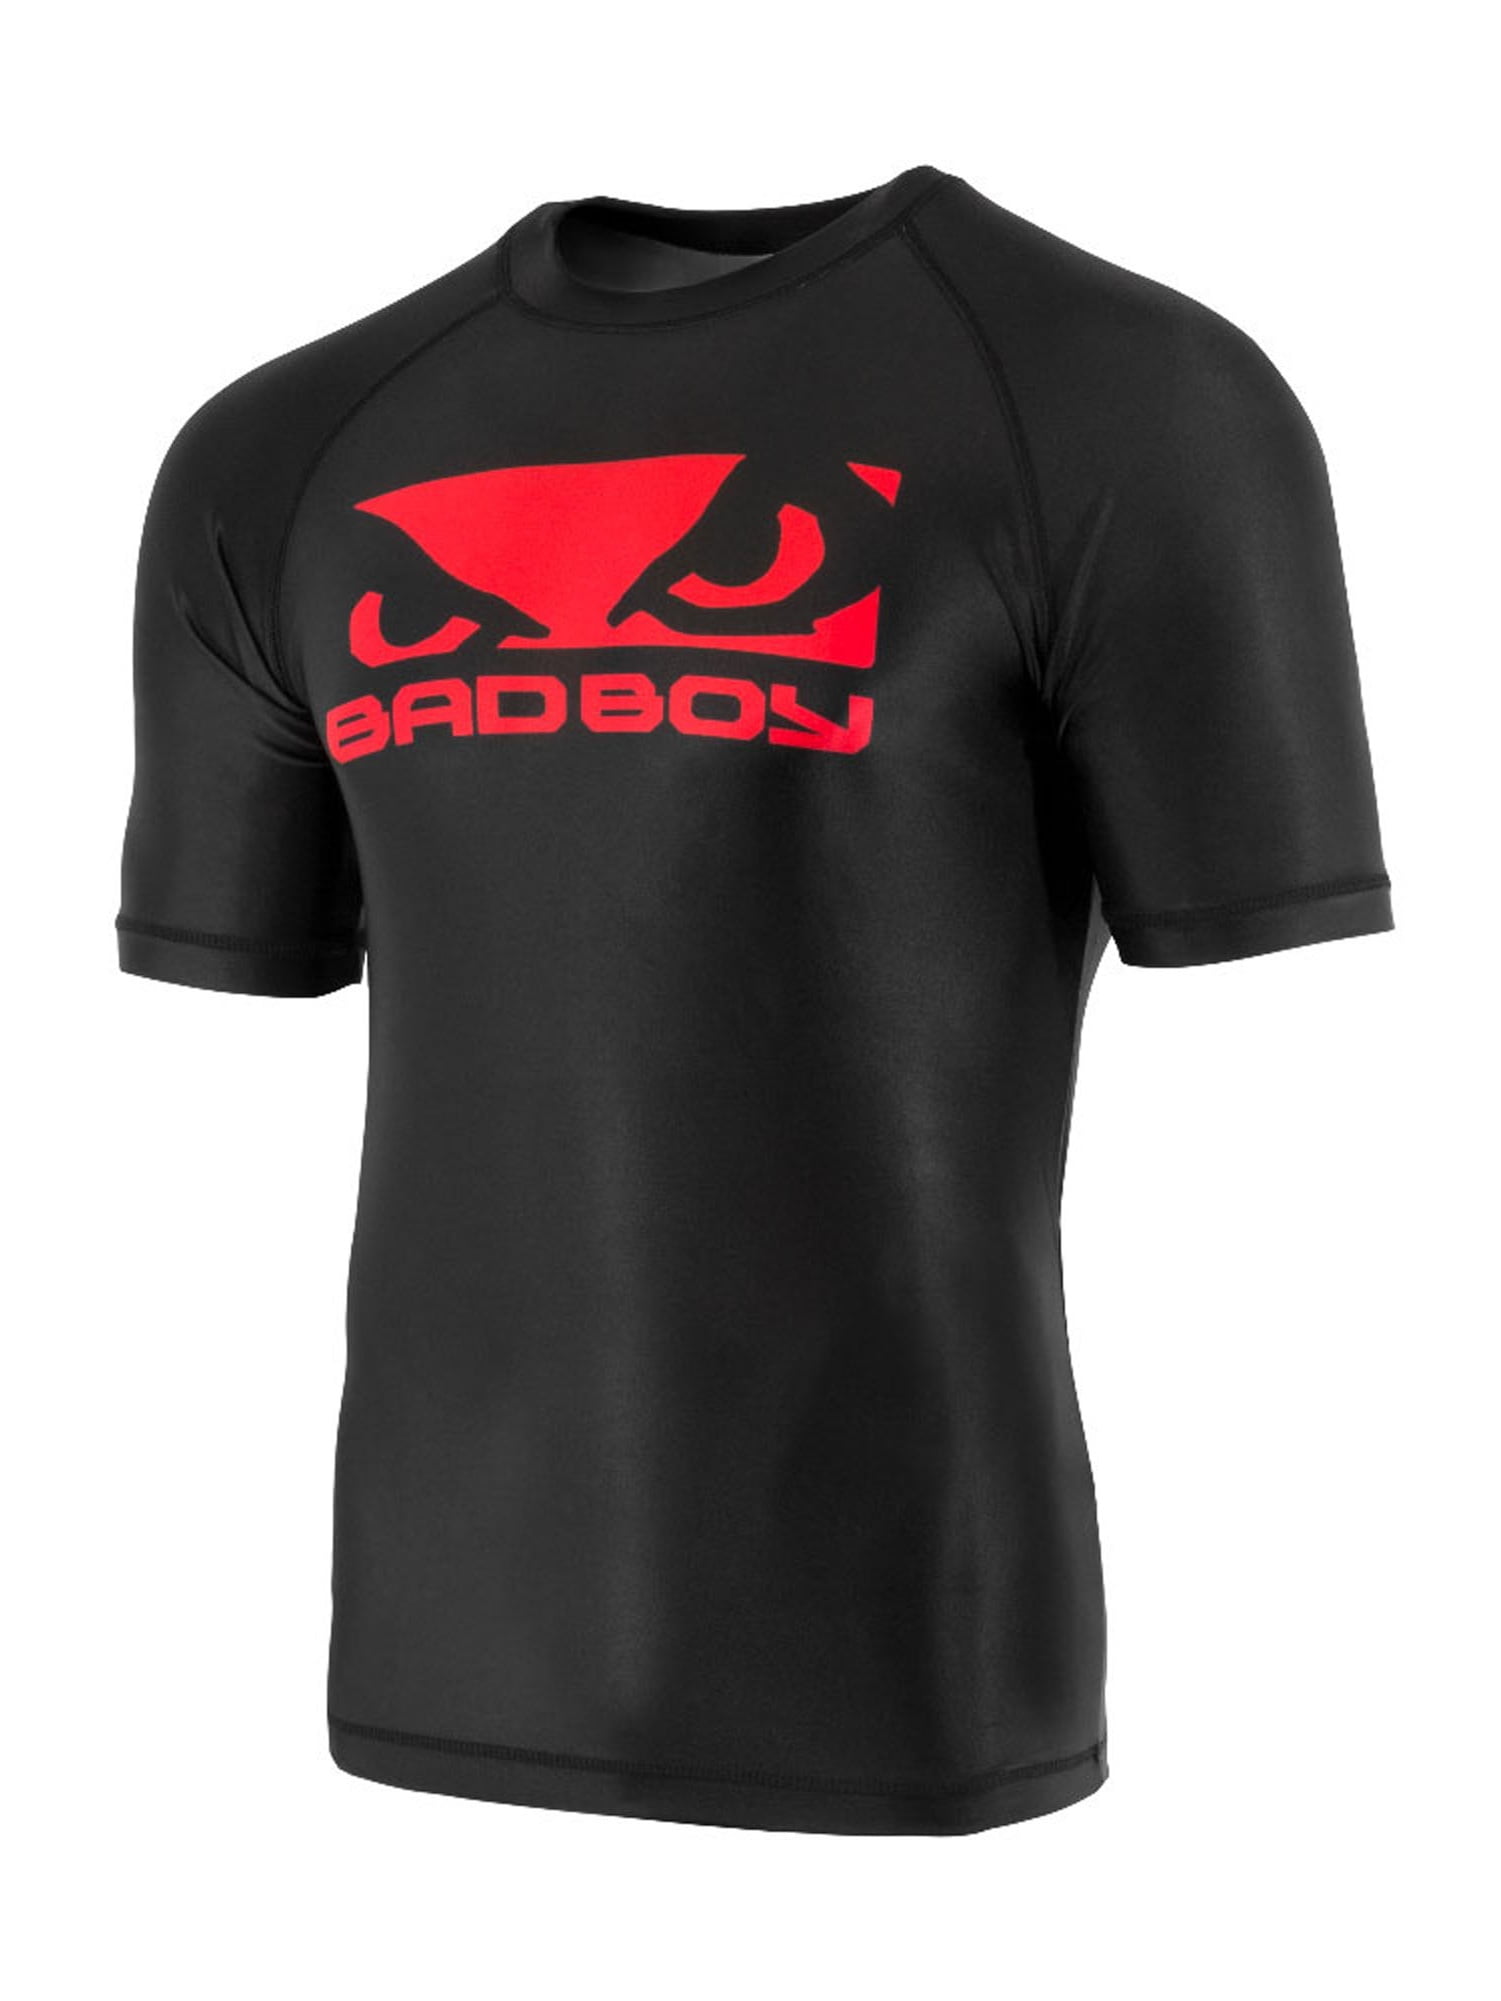 Bad Boy Men's Origin Short Rash Guard MMA BJJ Black/Red - Walmart.com